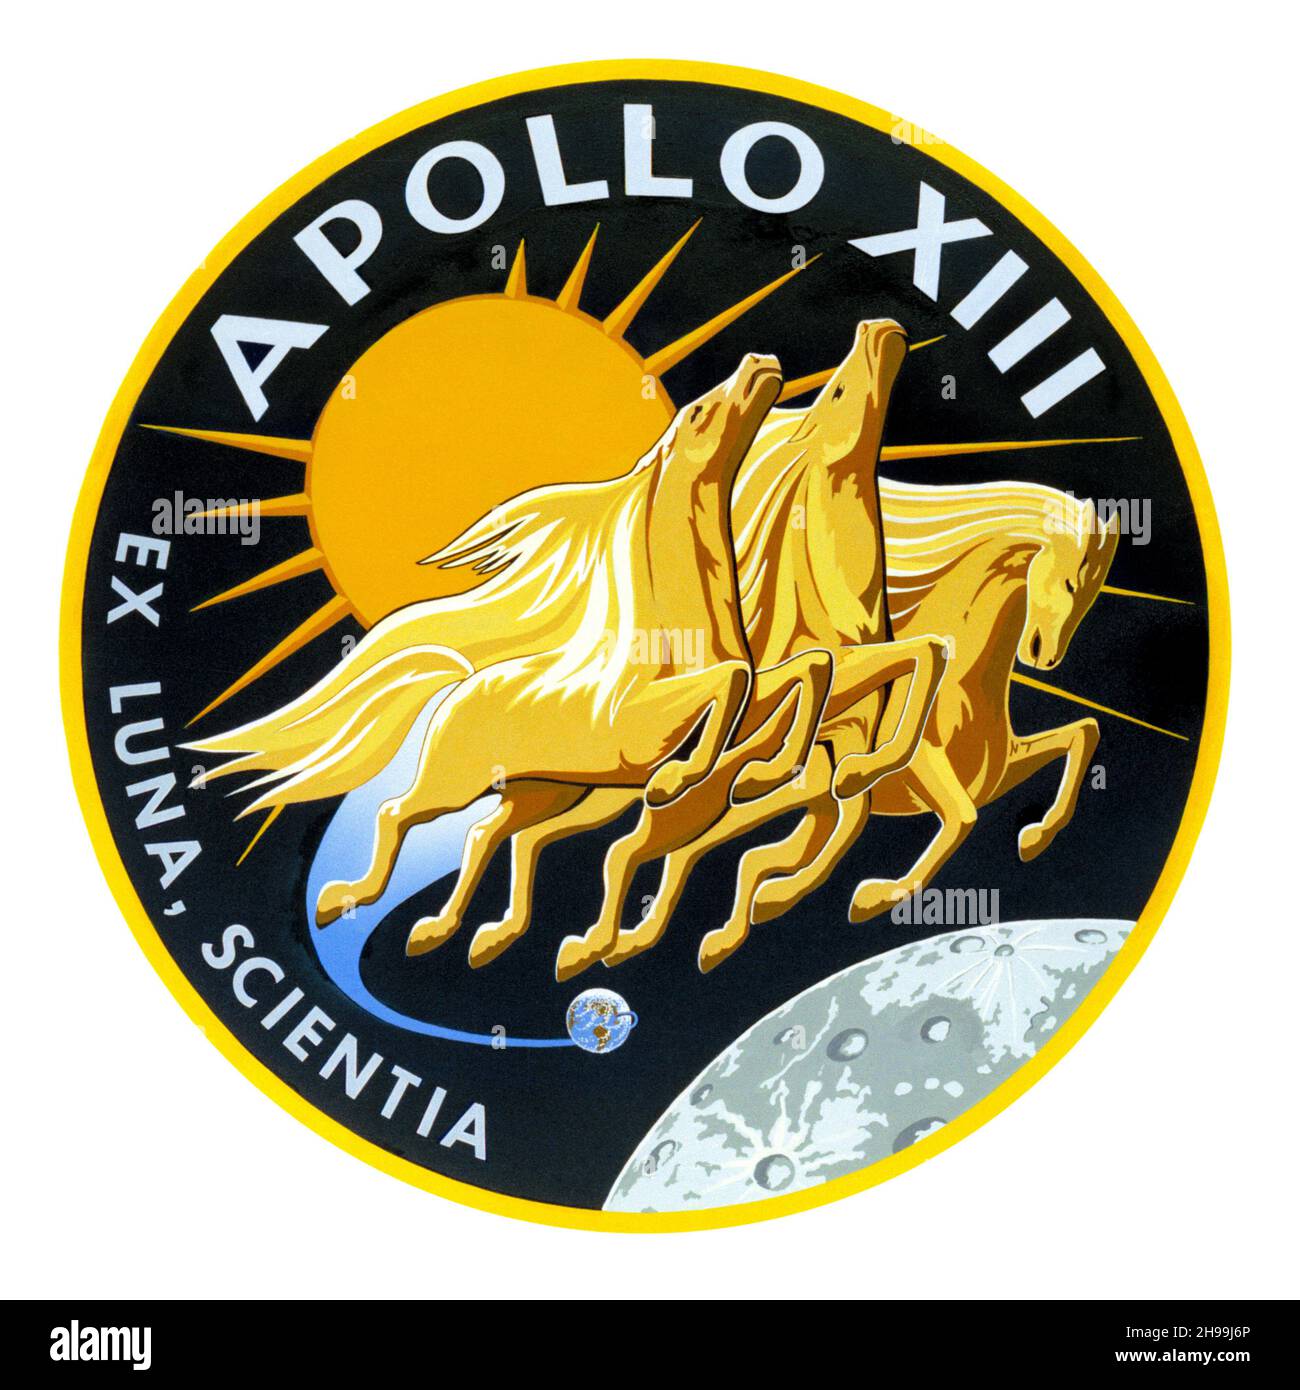 Apollo 13 insignia Stock Photo